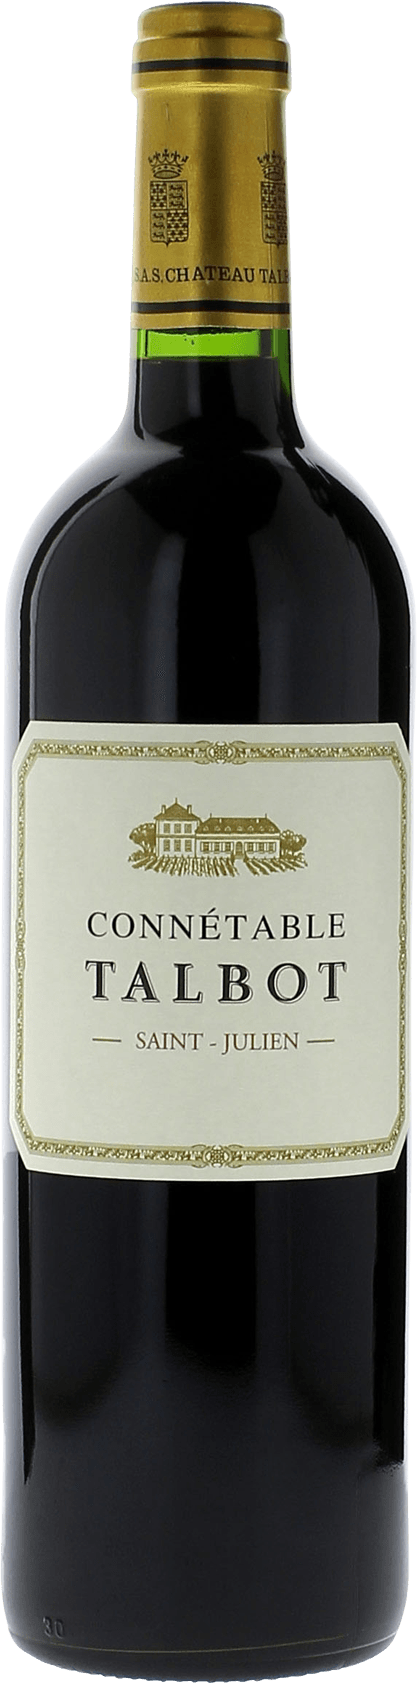 Connetable talbot 2018 2me vin de TALBOT Saint-Julien, Bordeaux rouge